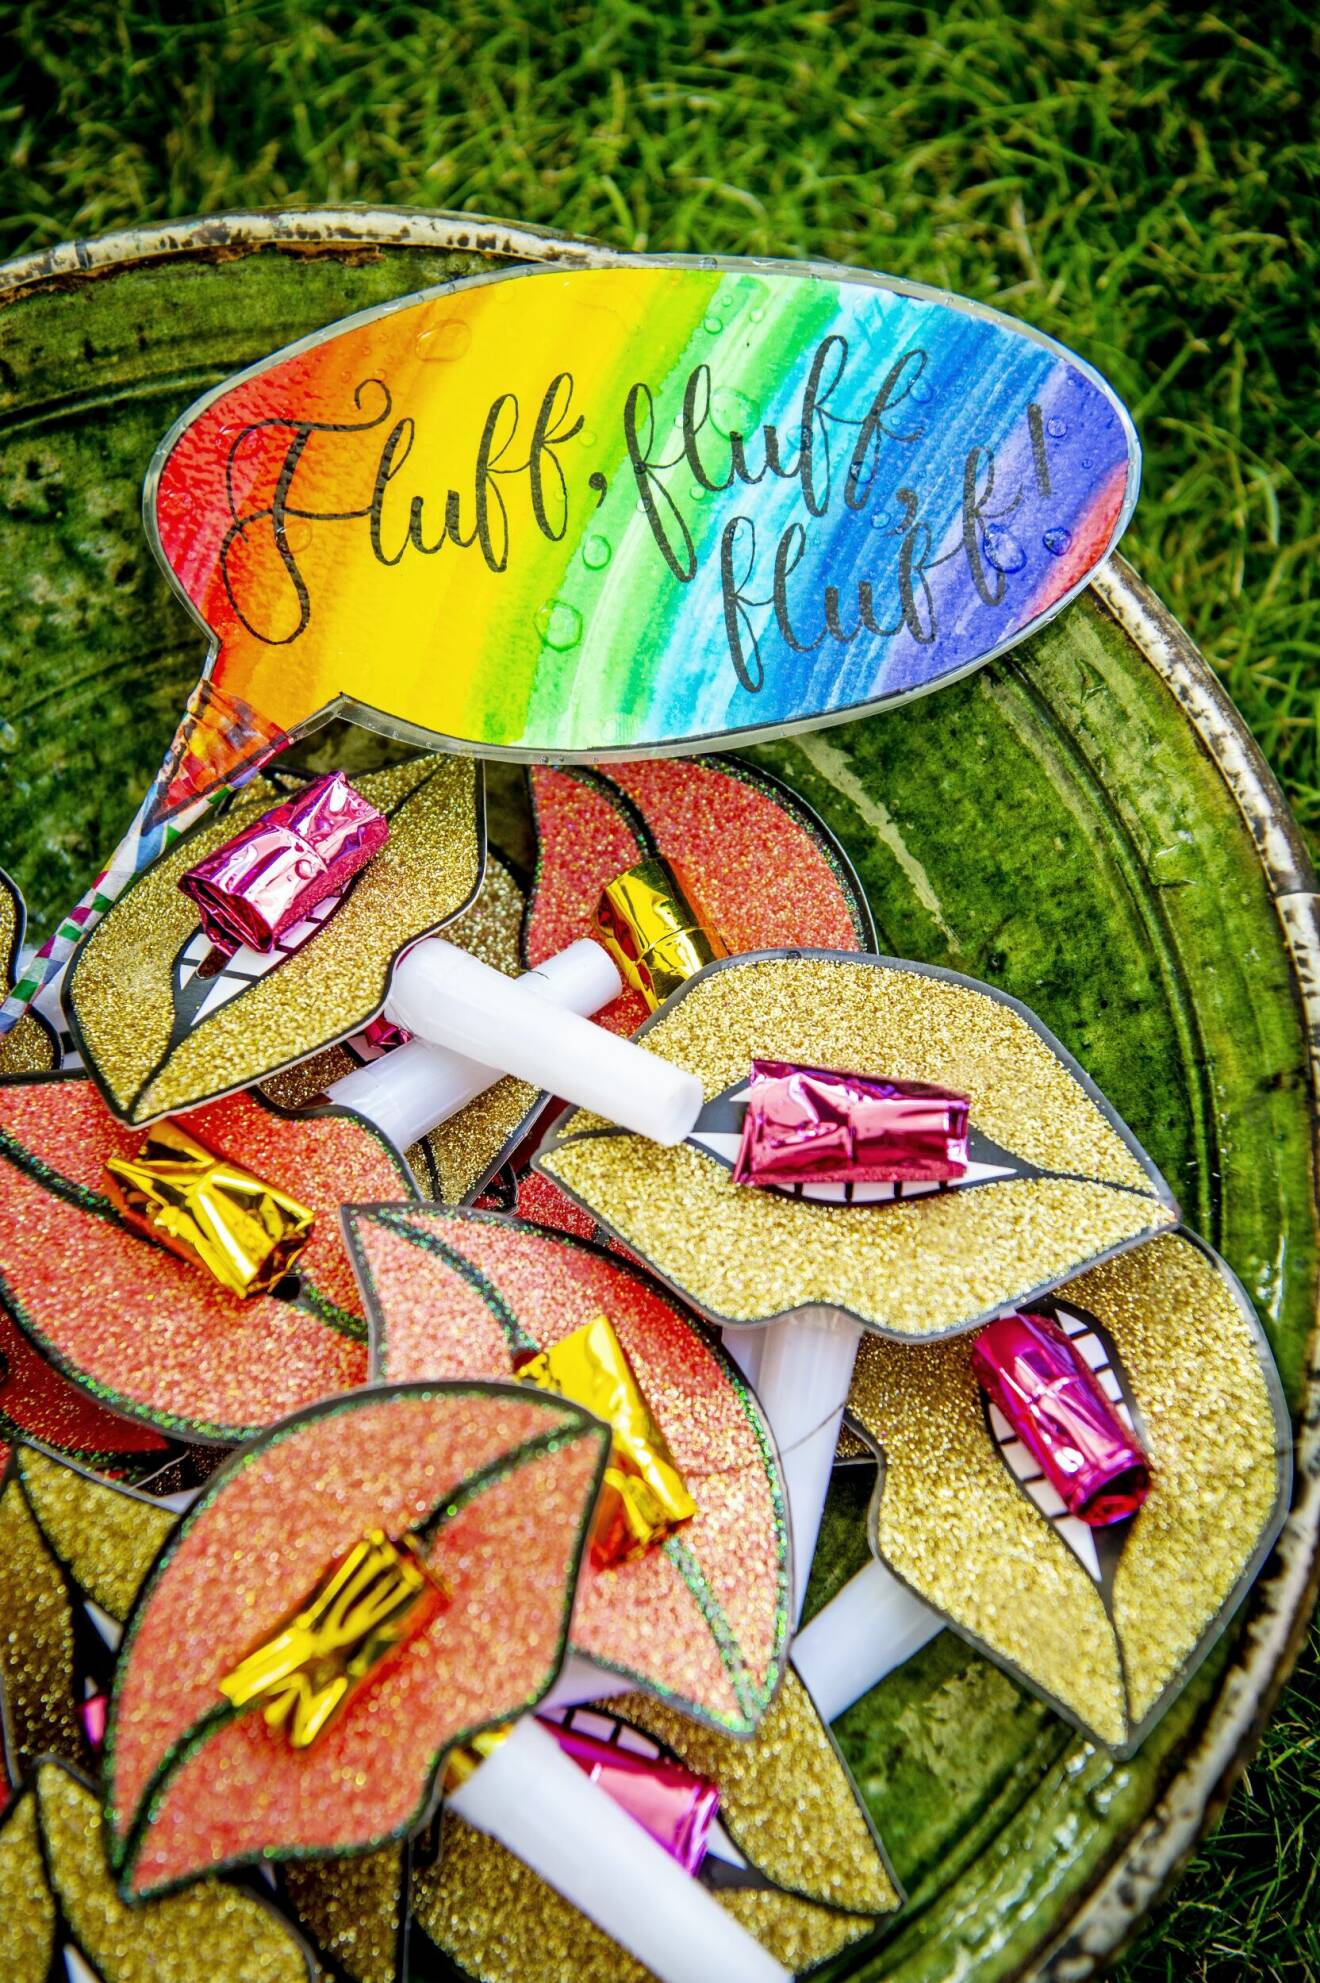 En regnbågsfärgad skylt med texten ”Fluff, fluff, fluff”.